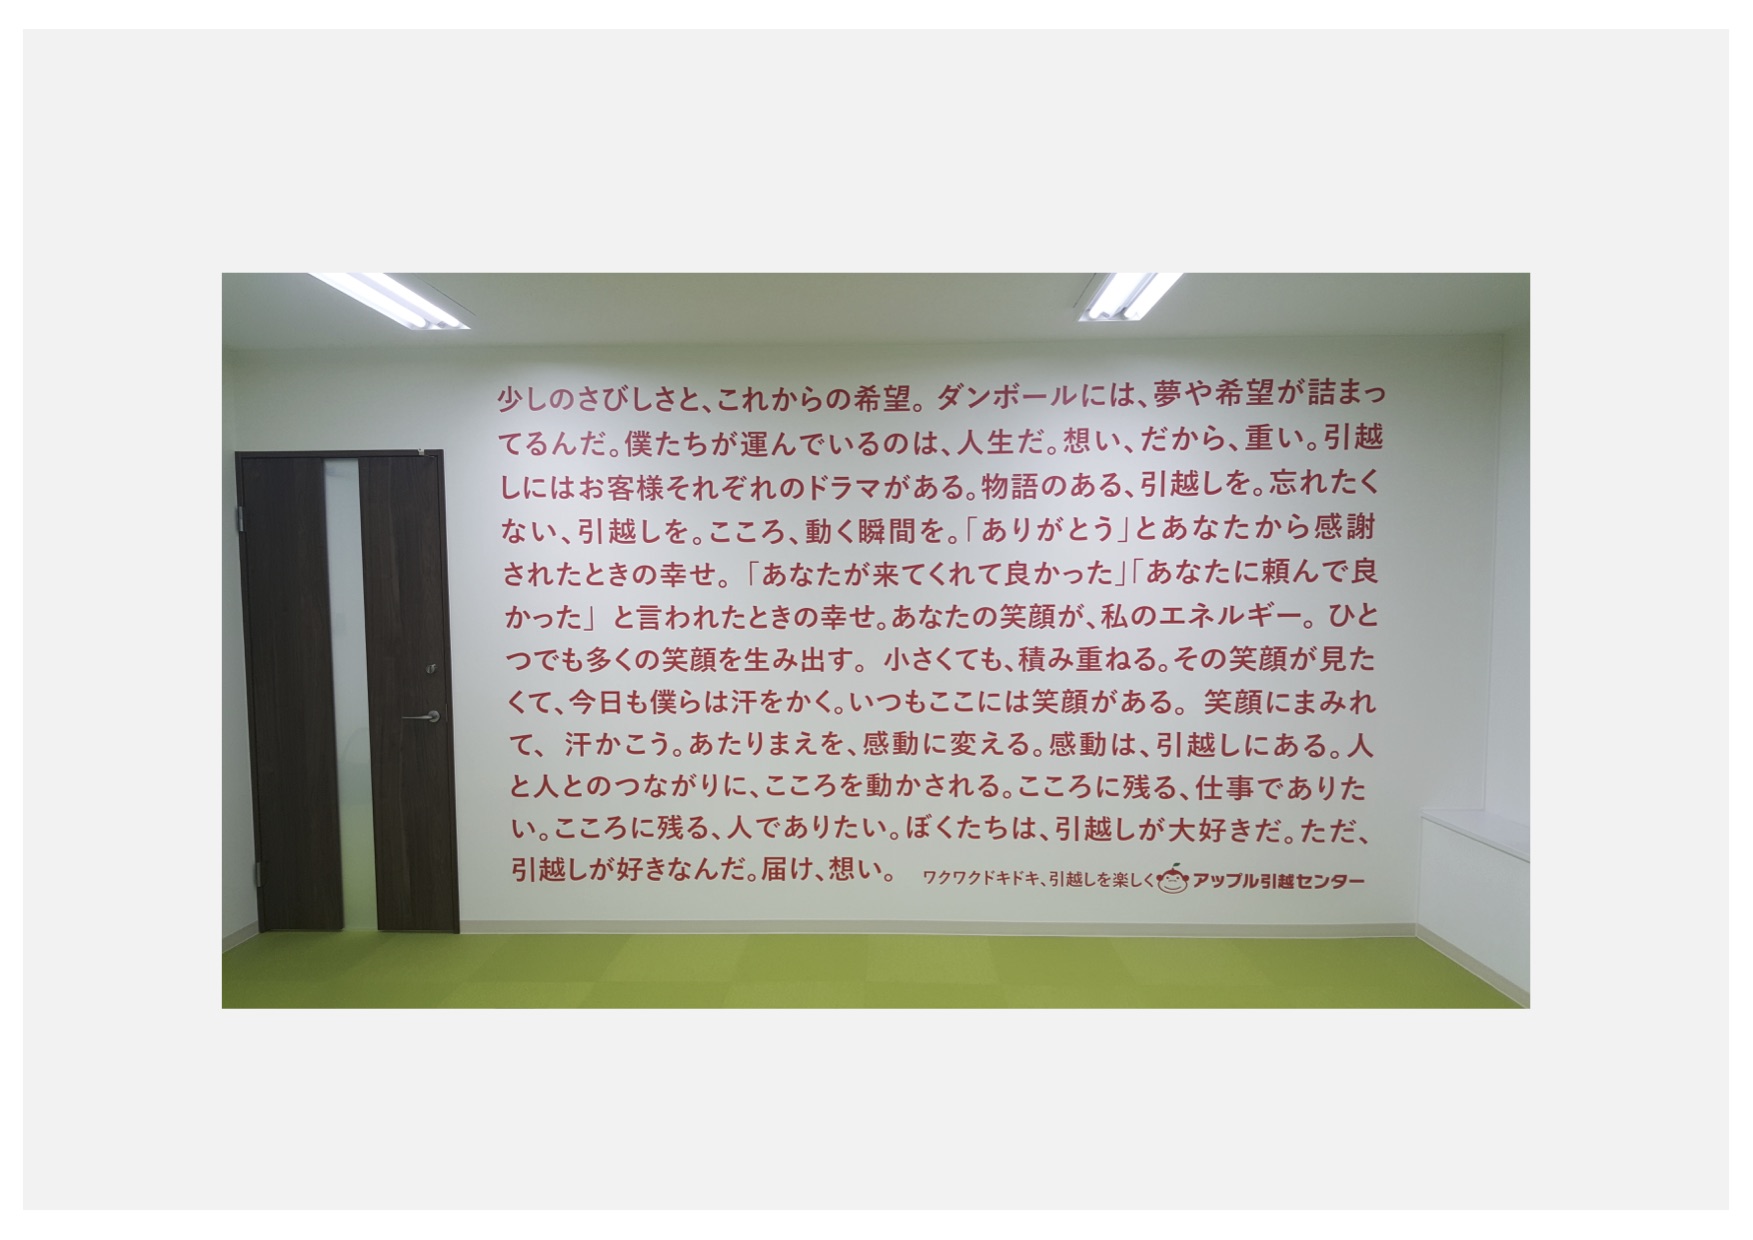 ▲大阪本社の壁に印字された言葉たちが、熱量をもって社員や来訪者を迎える。